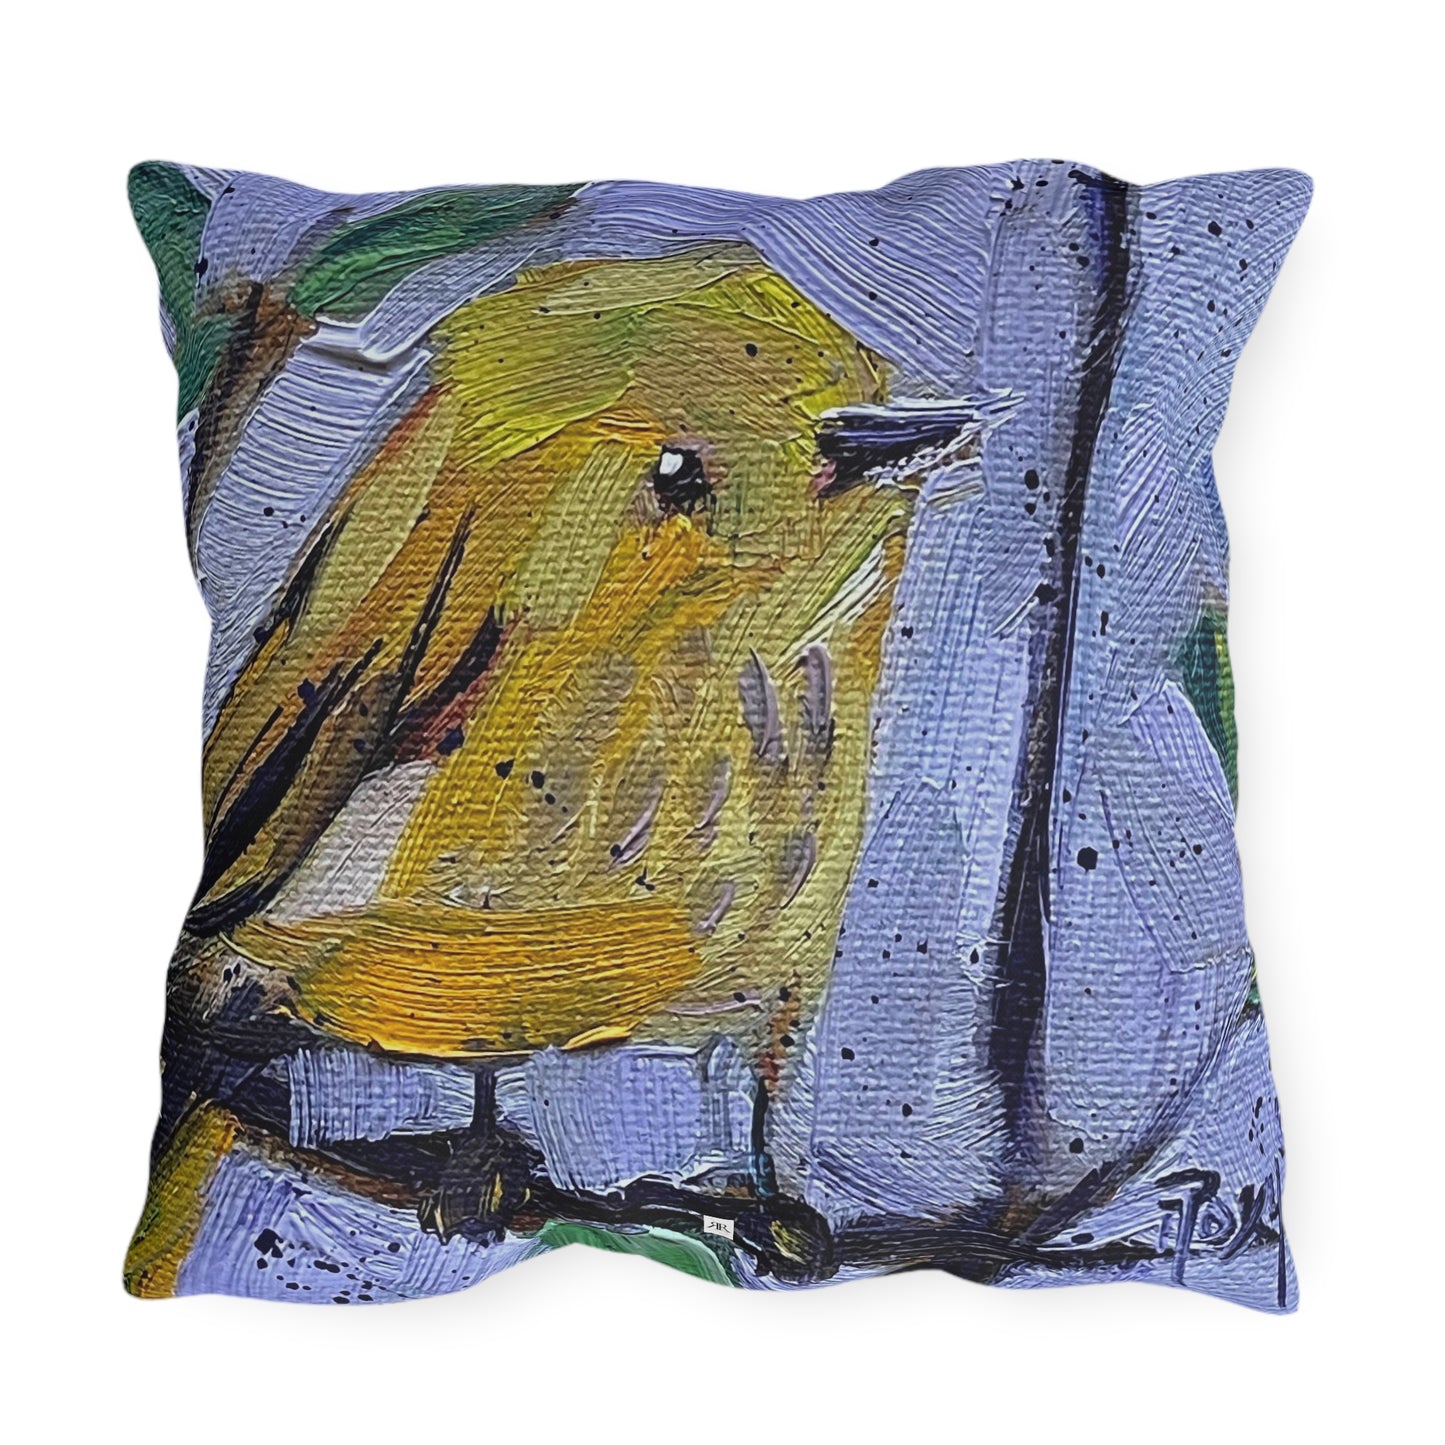 Winsome Little Warbler Outdoor Pillows